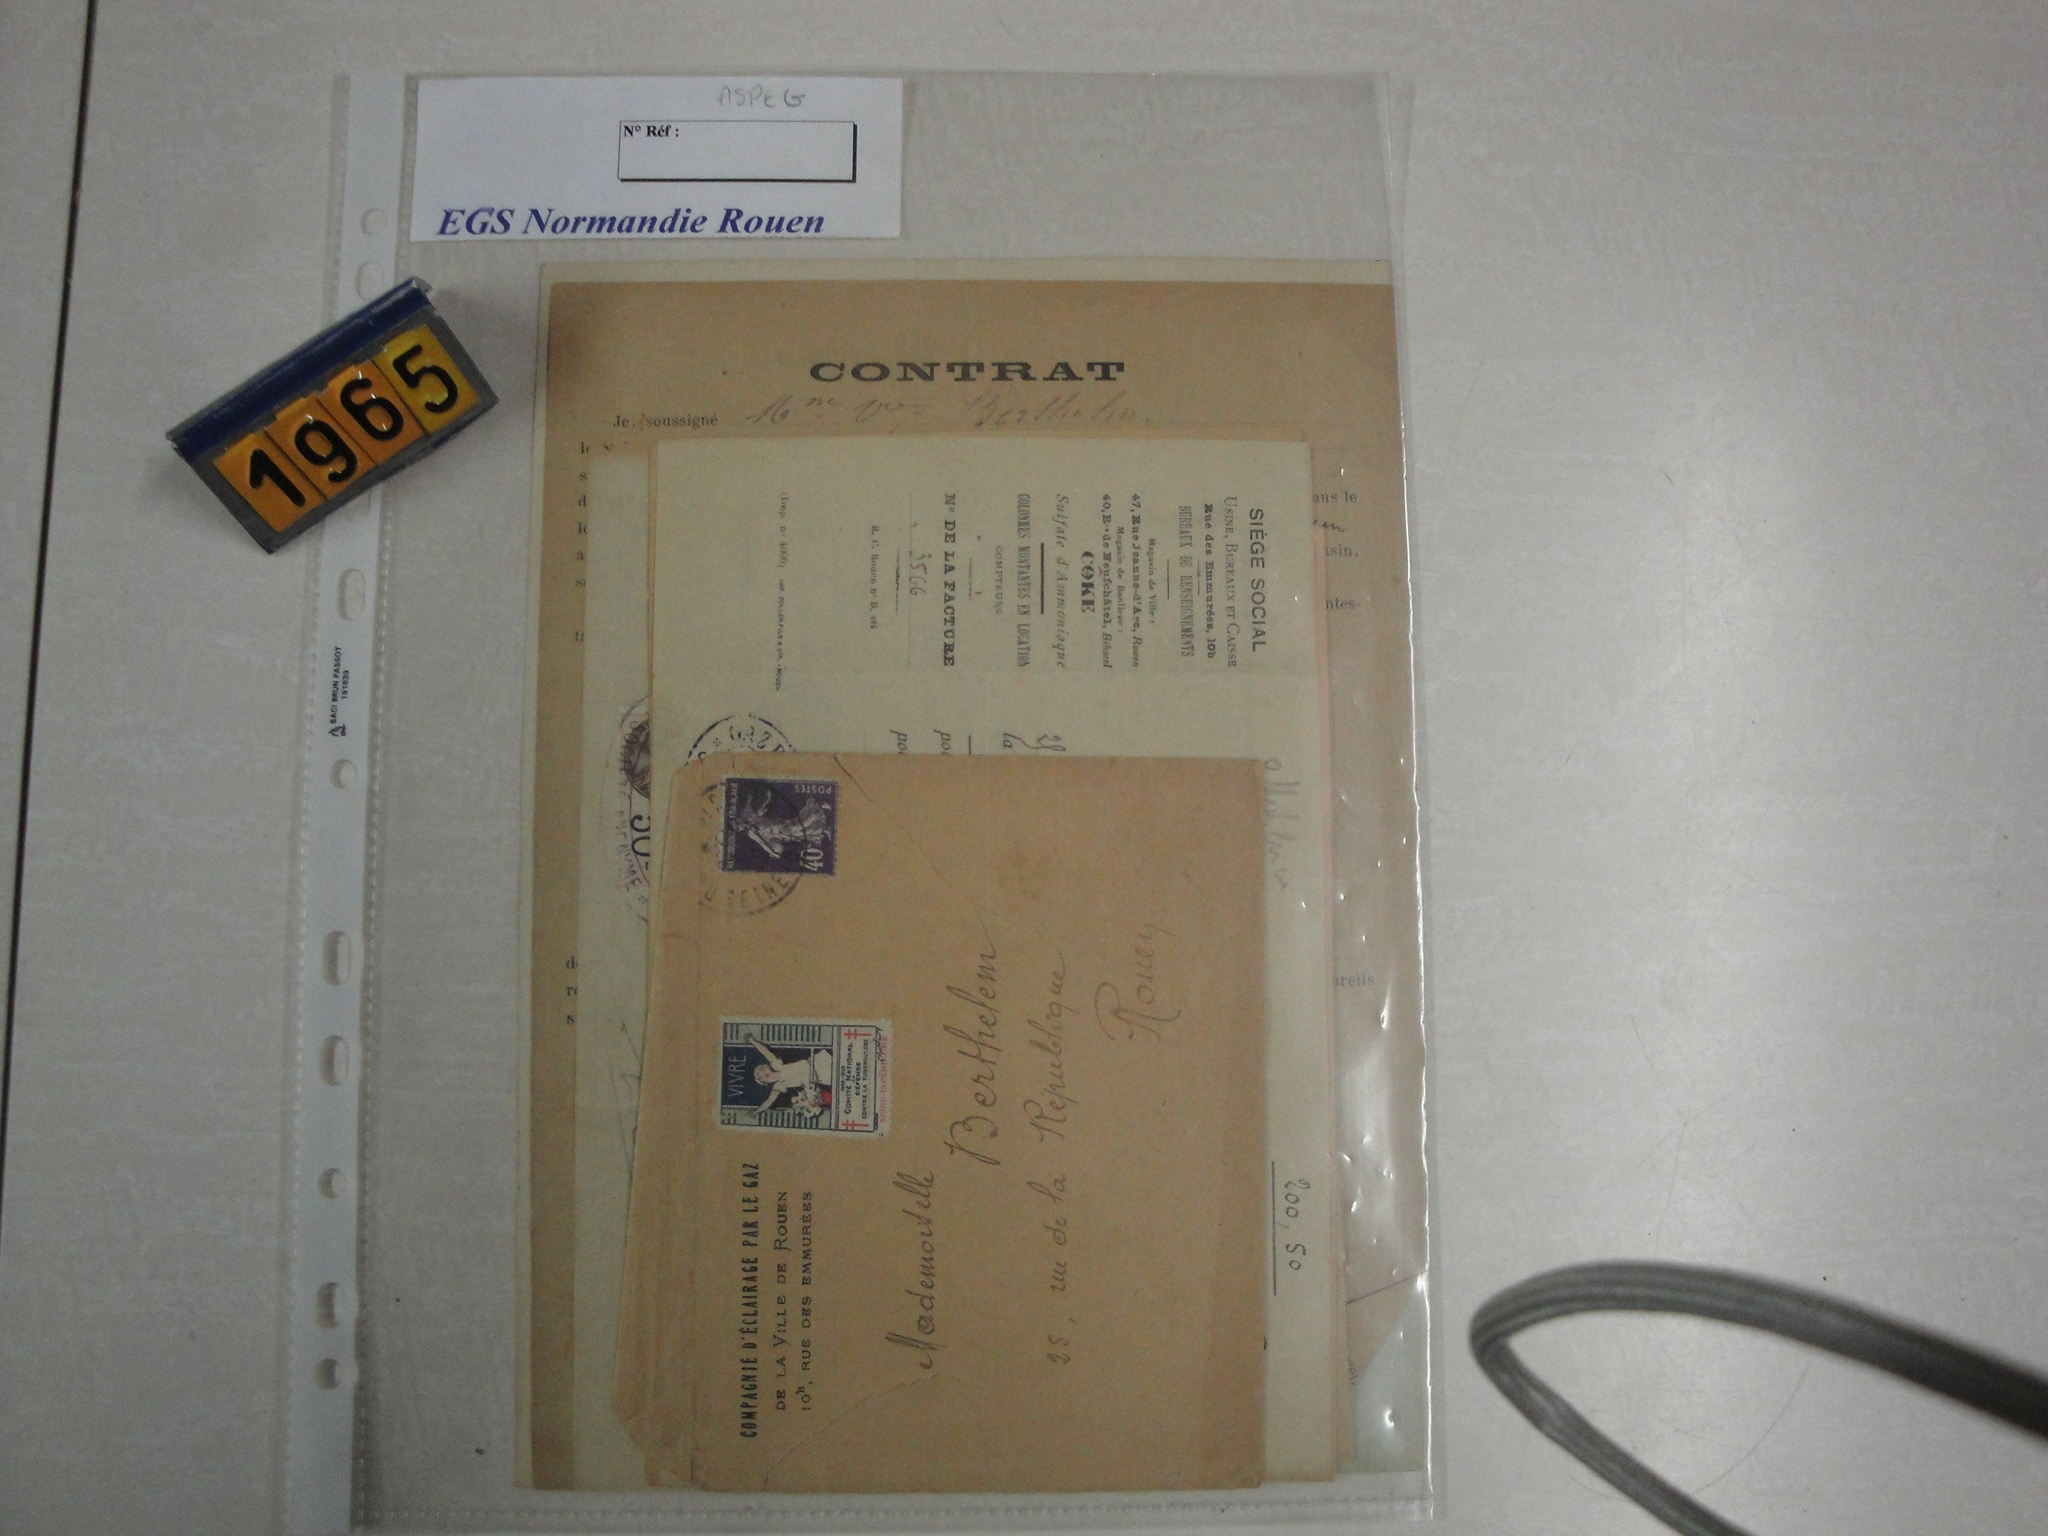  Collection ASPEG, pièce numéro 1965 : Contrat Abonnement Gaz